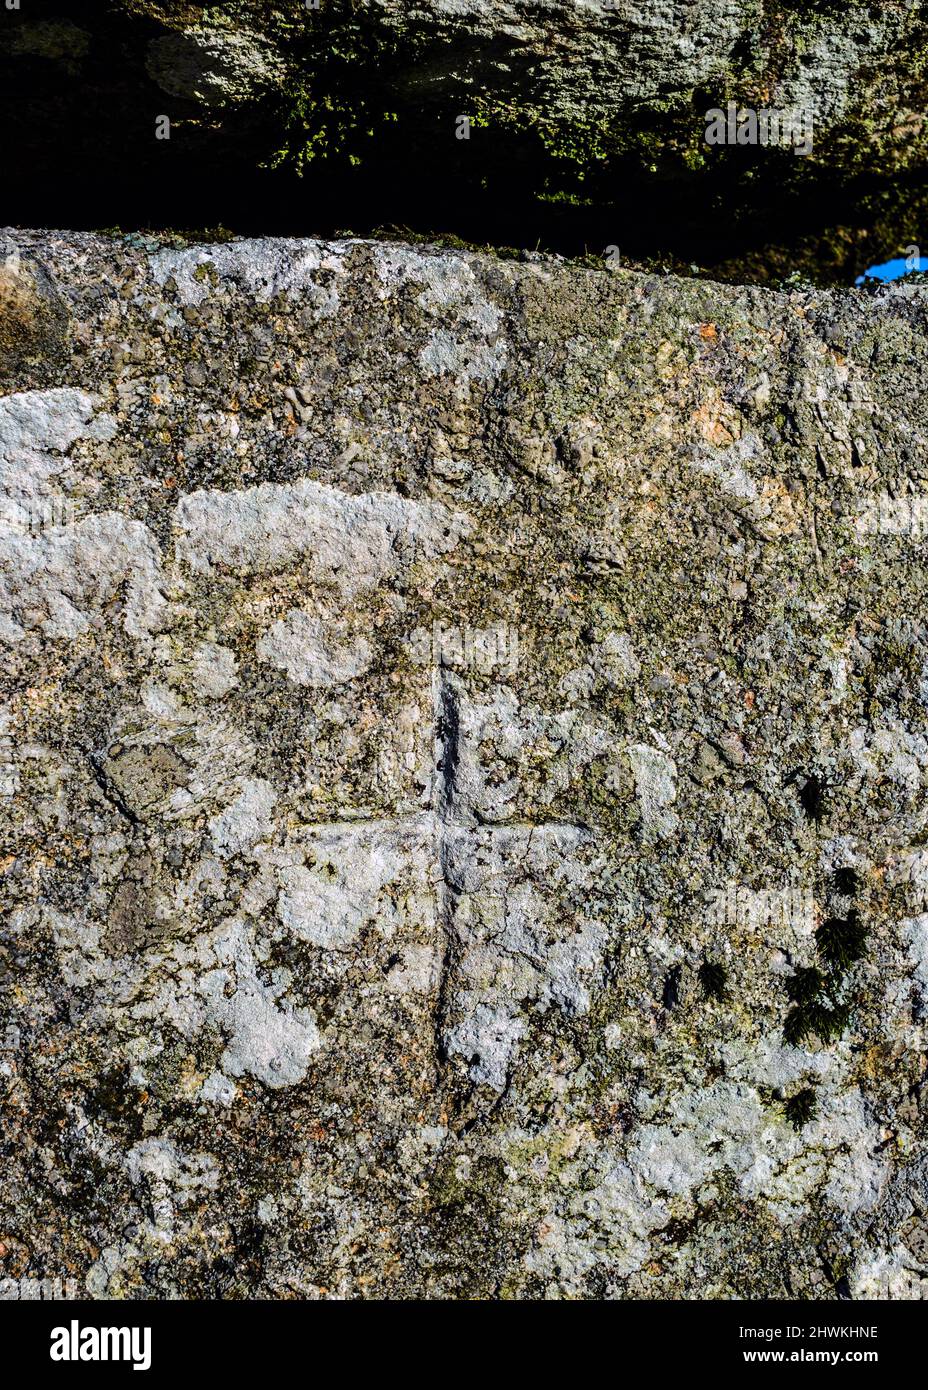 Regno Unito, Inghilterra, Devon. L'ingresso principale attraverso il villaggio di Bronze Age murato composto ha una croce cristiana scolpita nel granito sul lato destro. Foto Stock